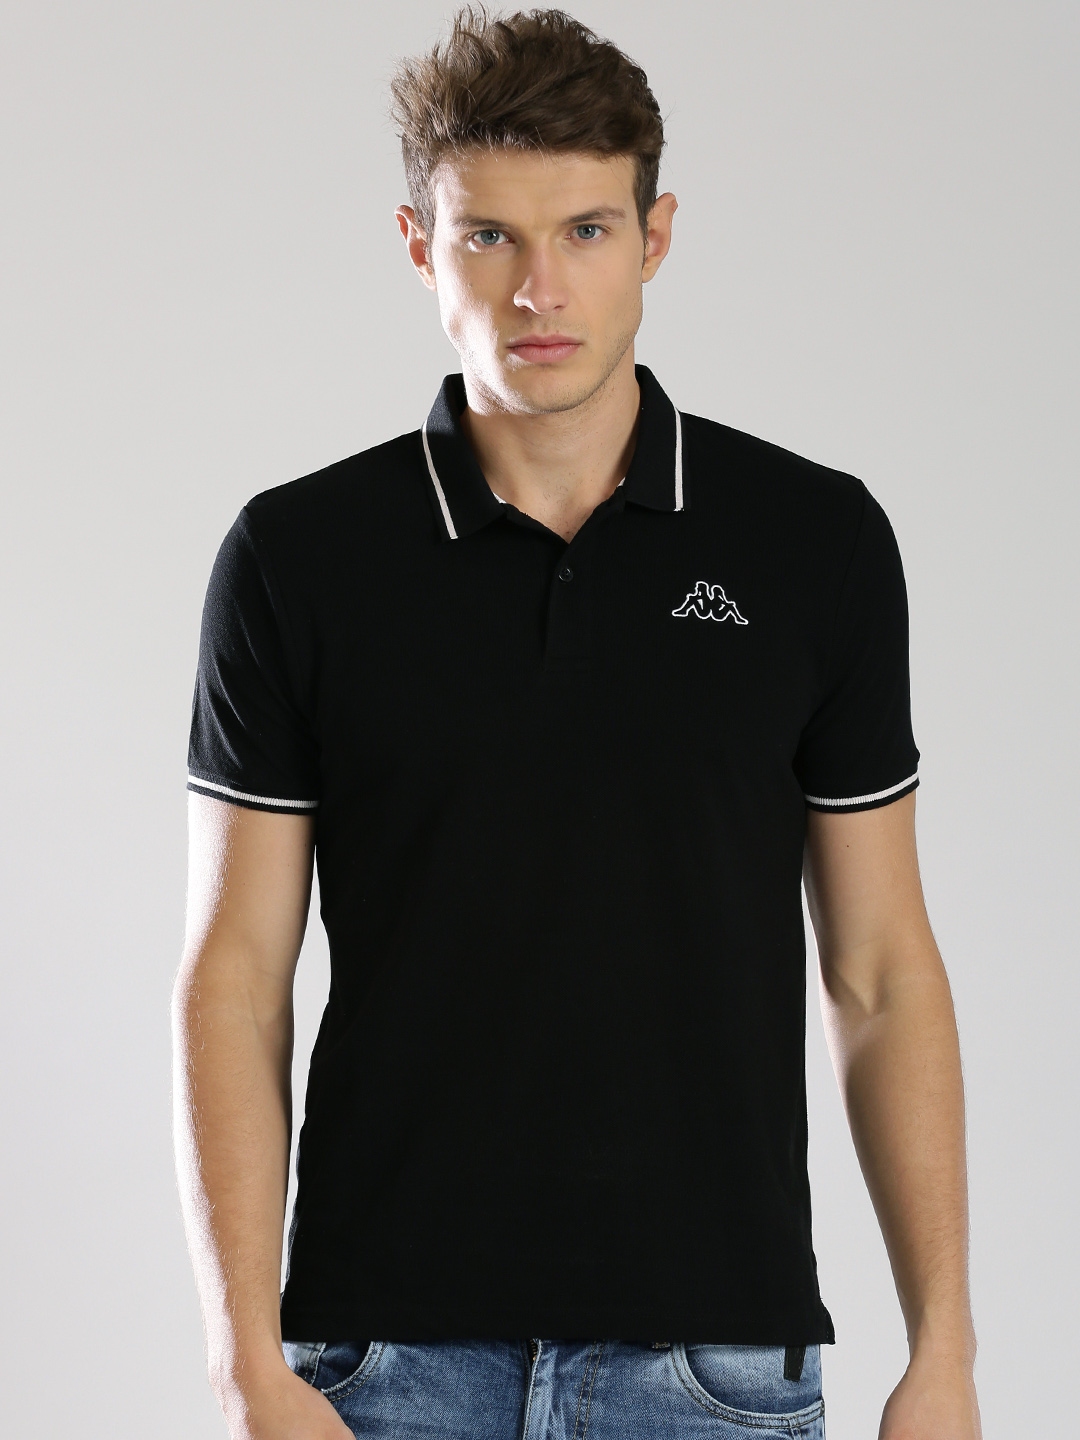 Kappa Black Polo Shirt - Tshirts for Men 1011481 | Myntra